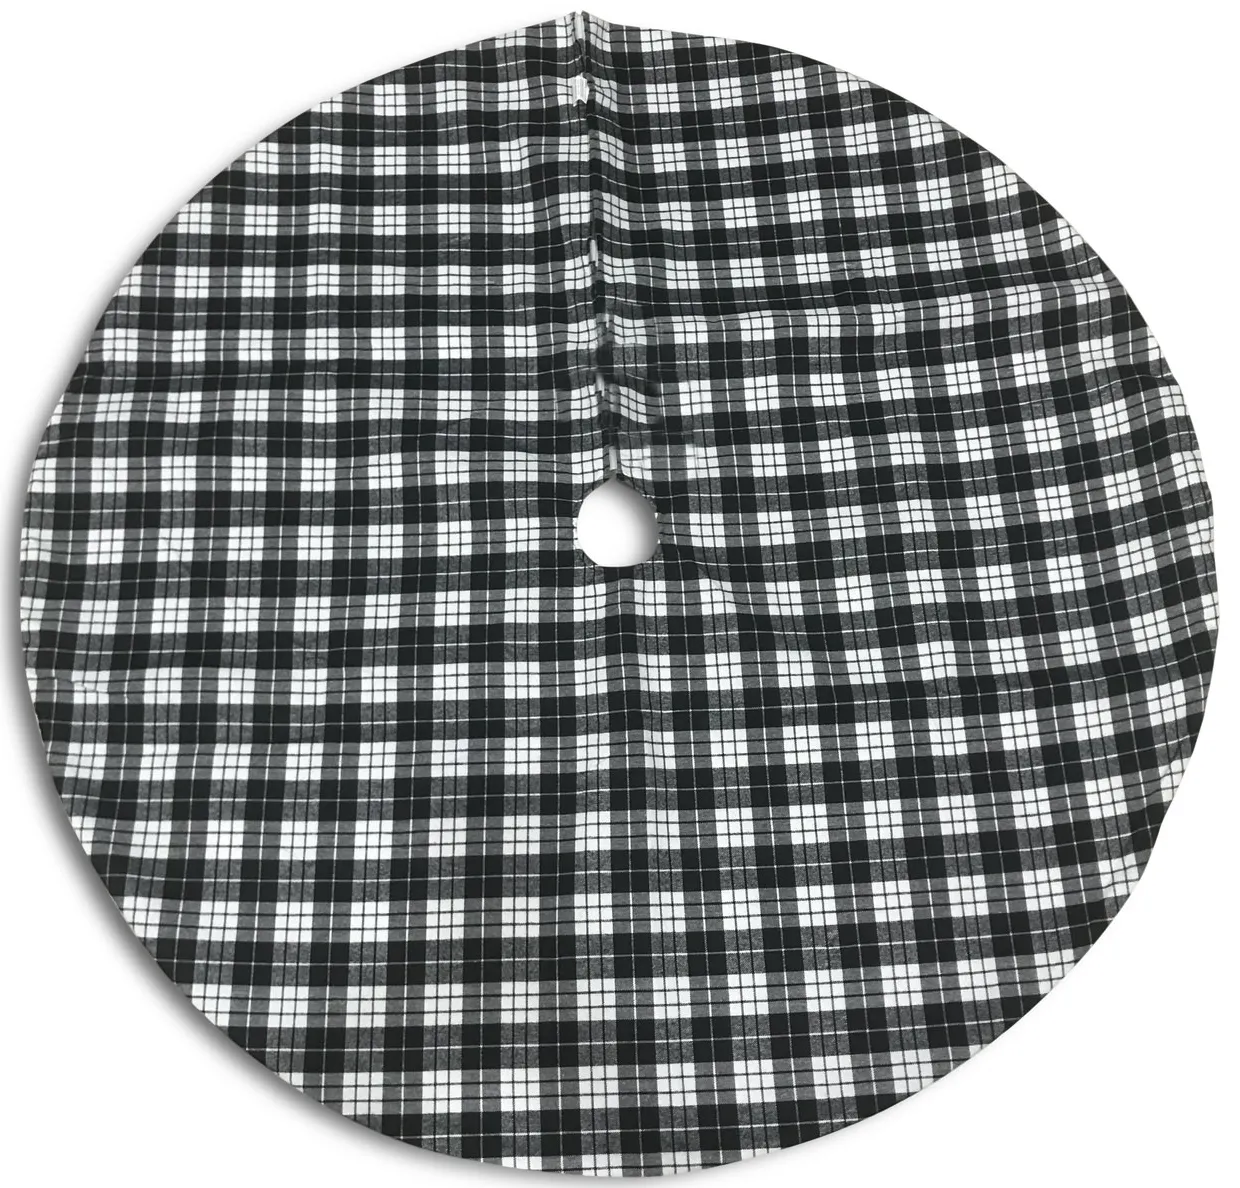 48  Black White Checker Tree Skirt